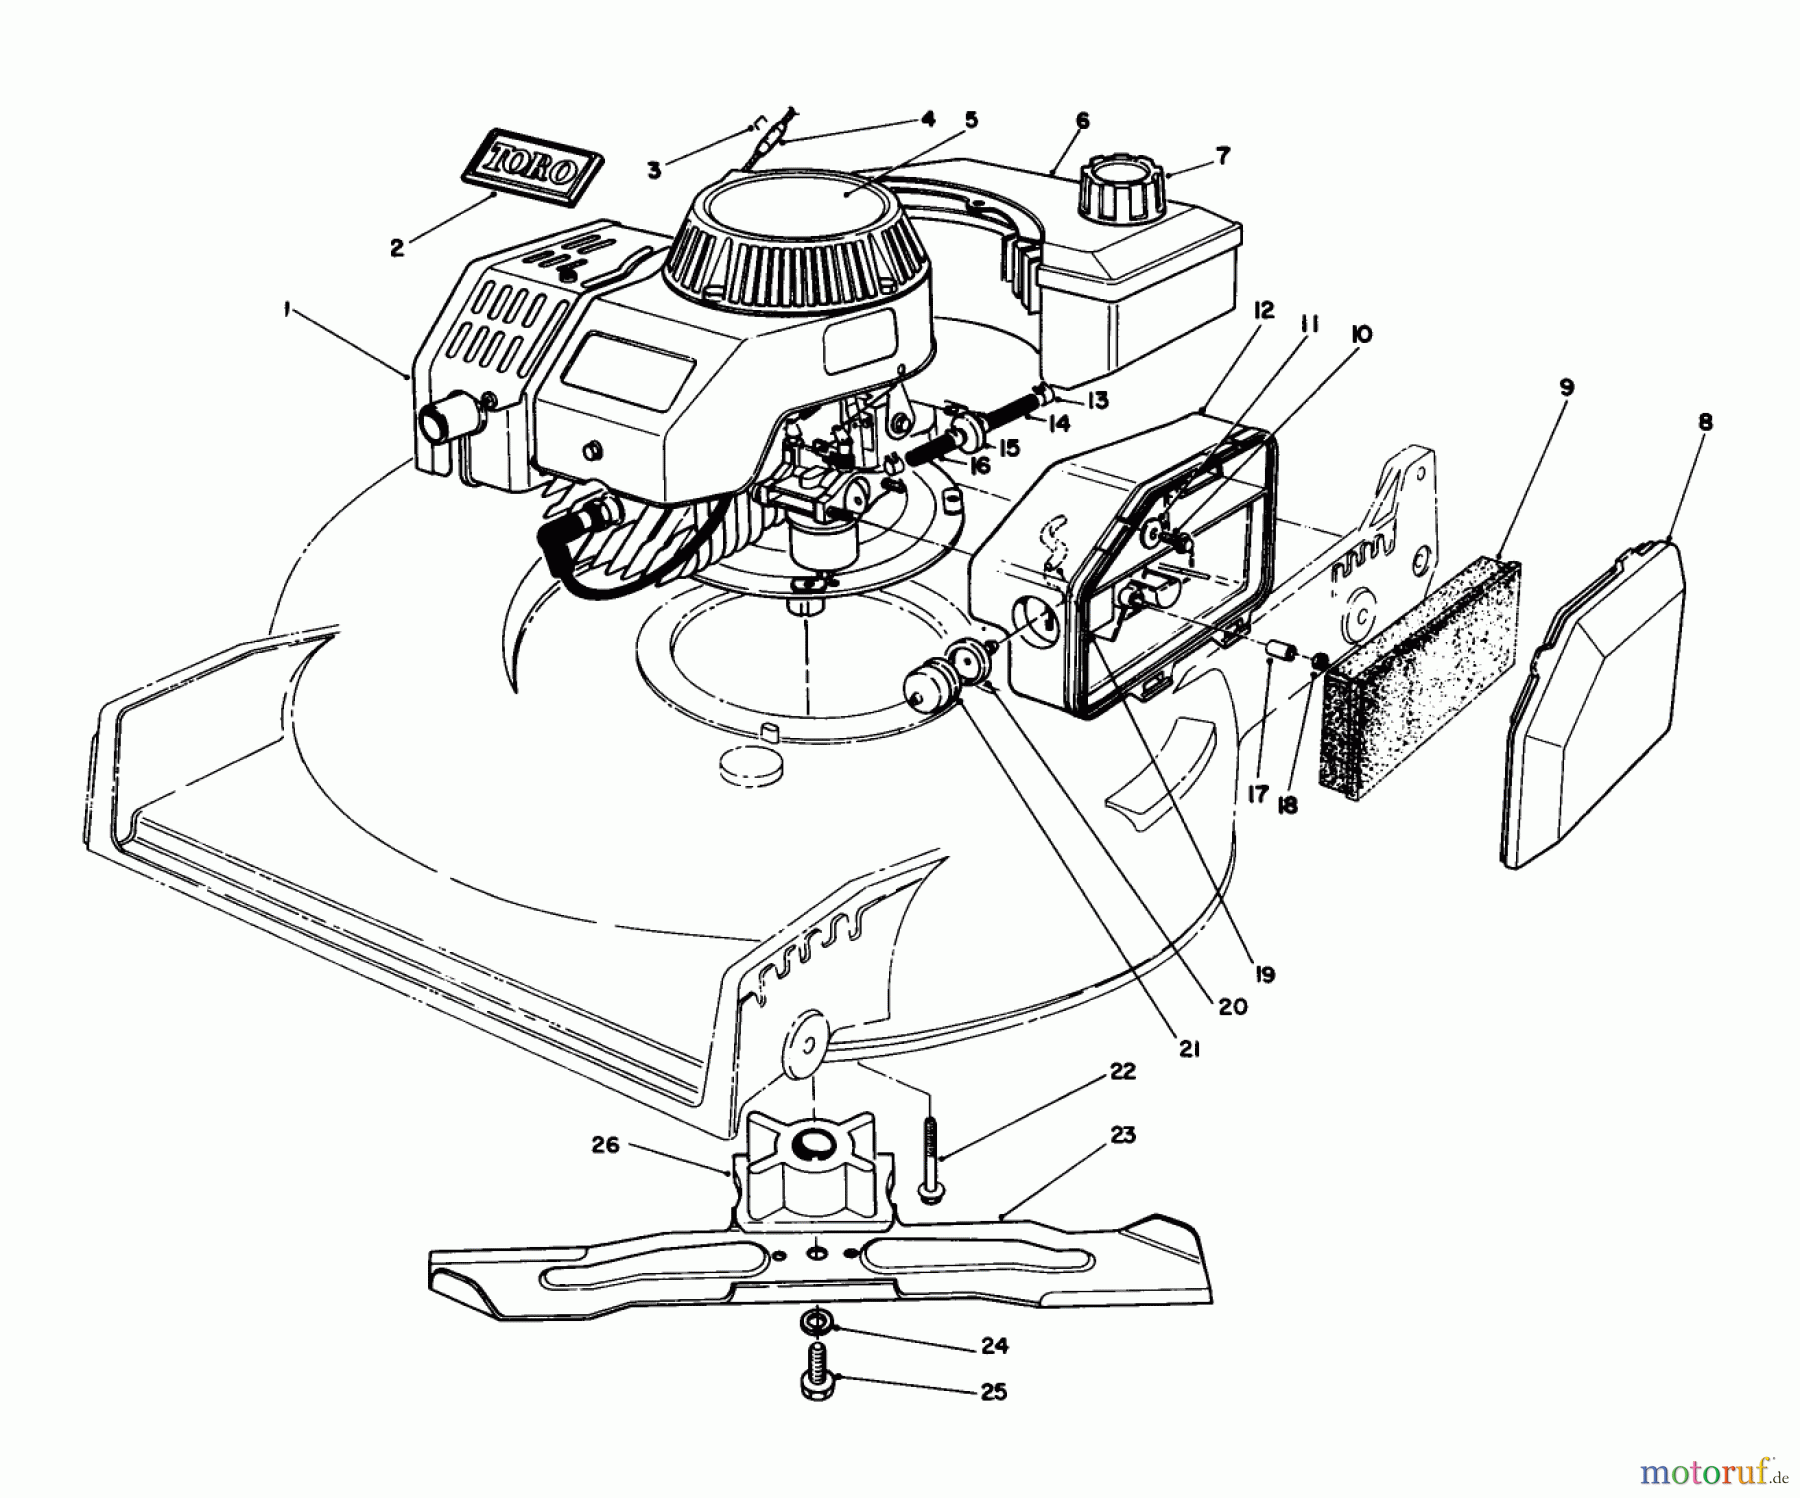  Toro Neu Mowers, Walk-Behind Seite 1 20581 - Toro Lawnmower, 1988 (8000001-8999999) ENGINE ASSEMBLY